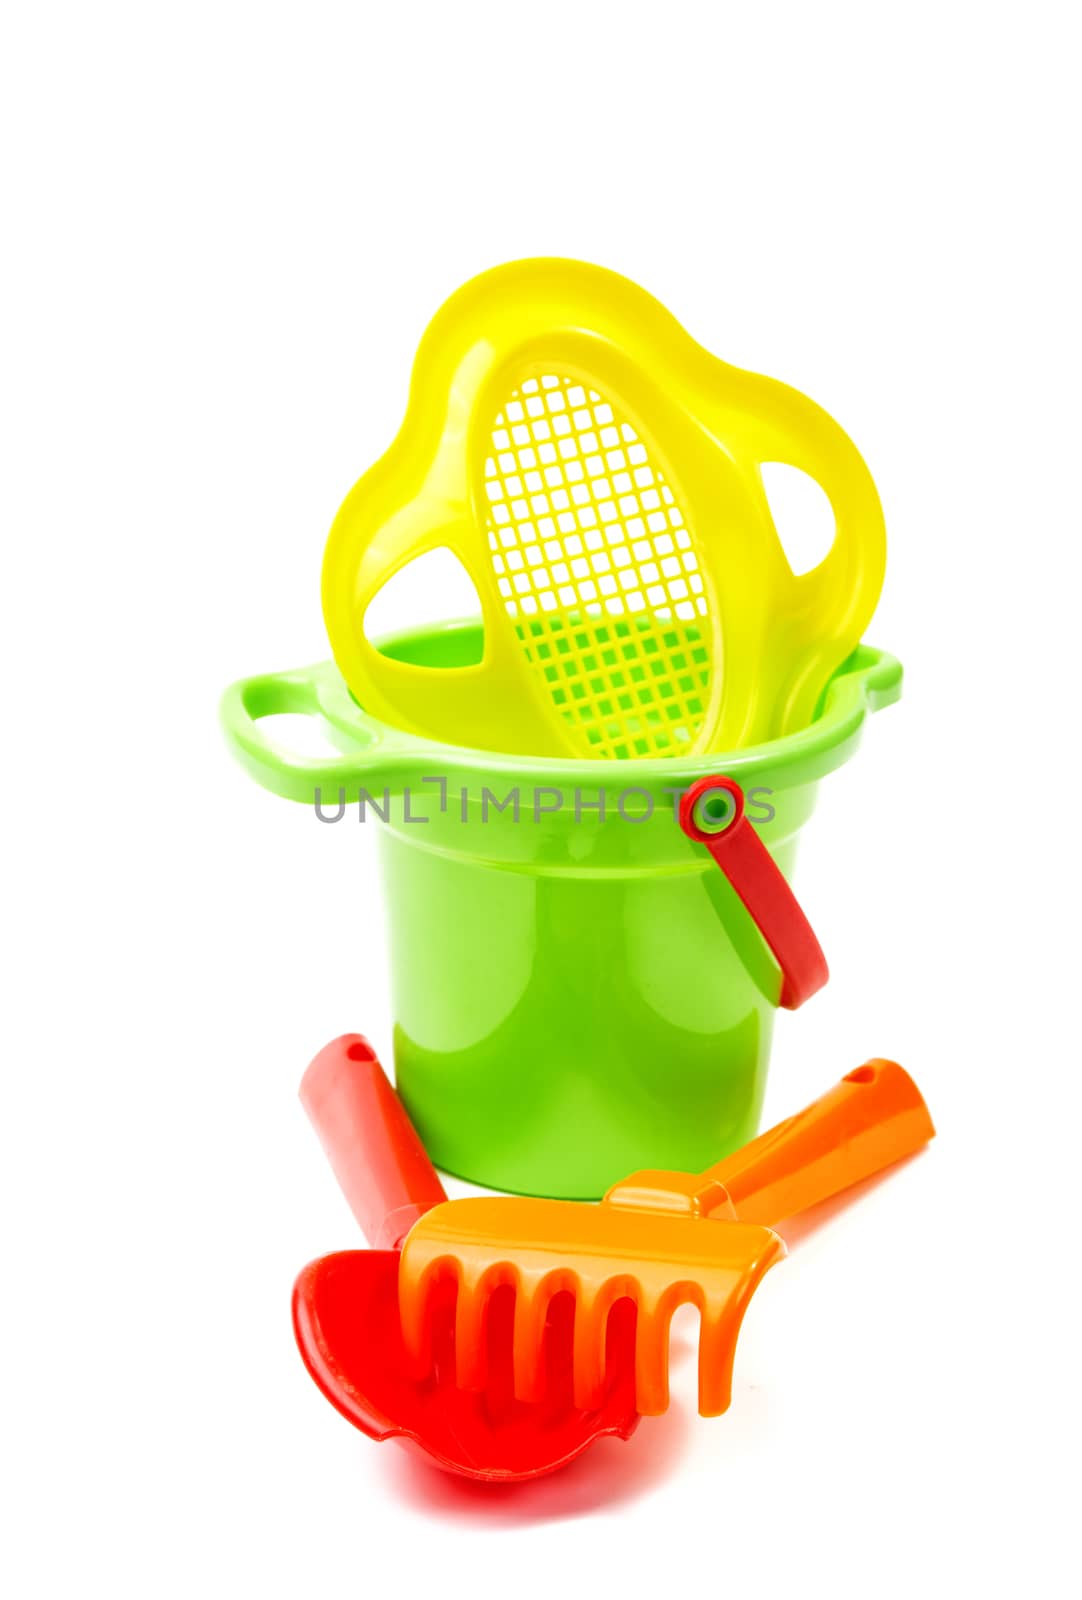 Children's toys  bucket  shovel and  rake on the white